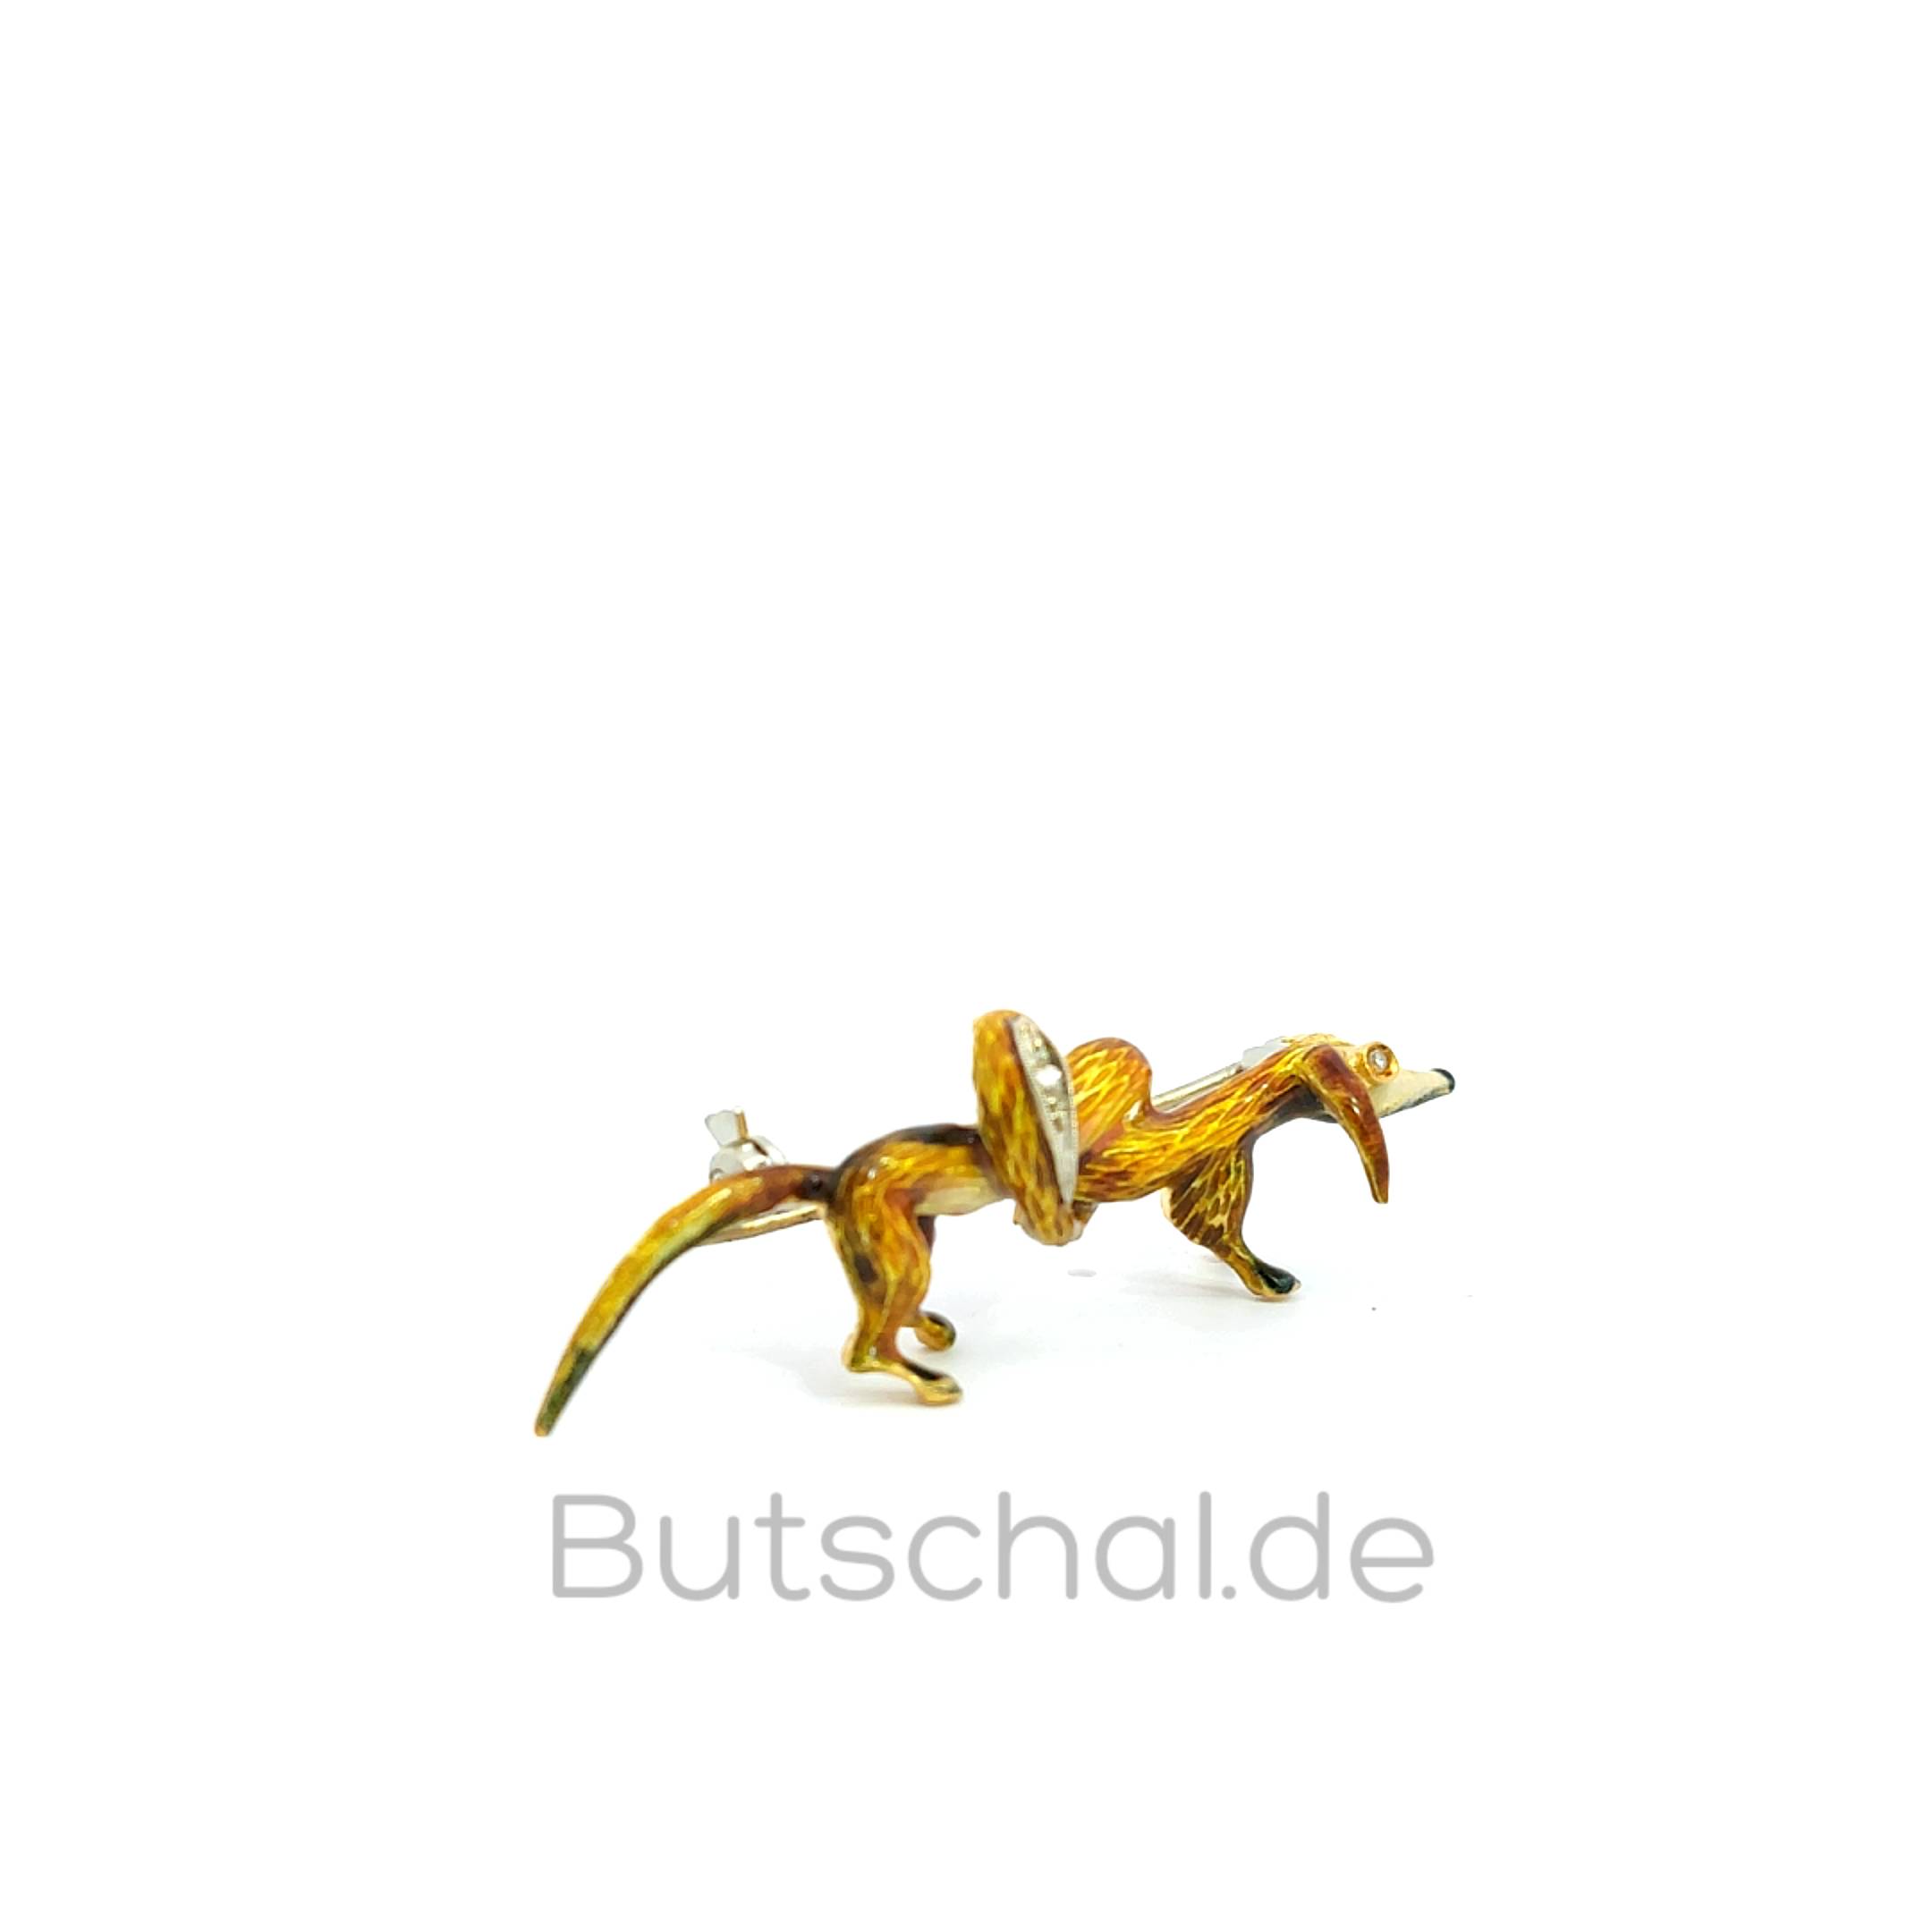   Diamant Brosche Hund mit mit Knoten emailiert in 18kt Gelbgold| Handarbeit